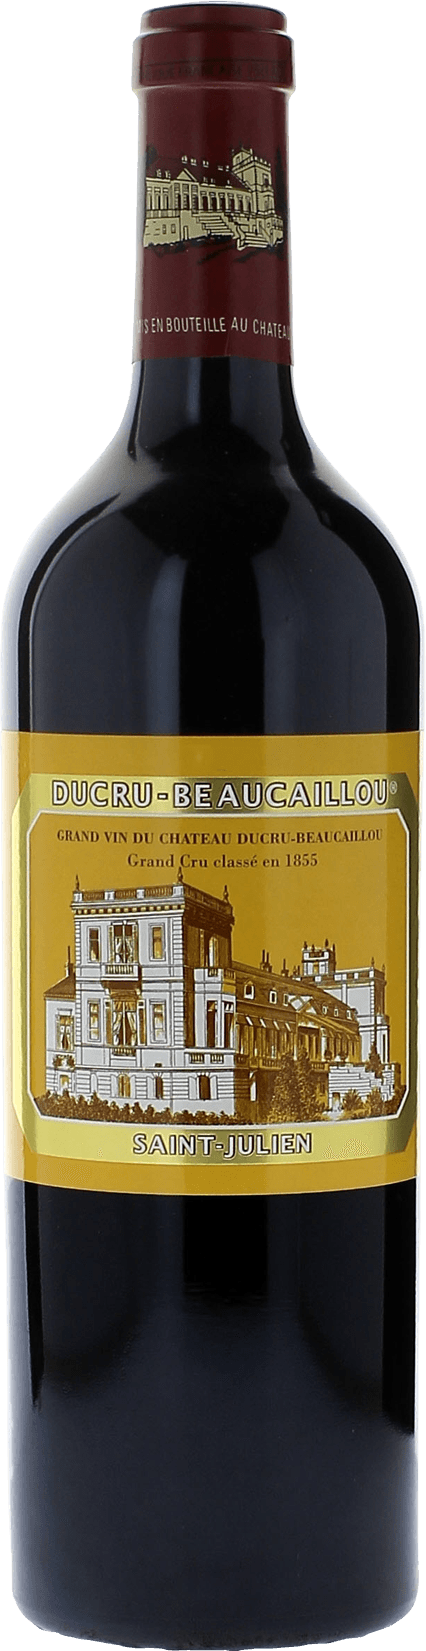 Ducru beaucaillou 1966 2me Grand cru class Saint-Julien, Bordeaux rouge